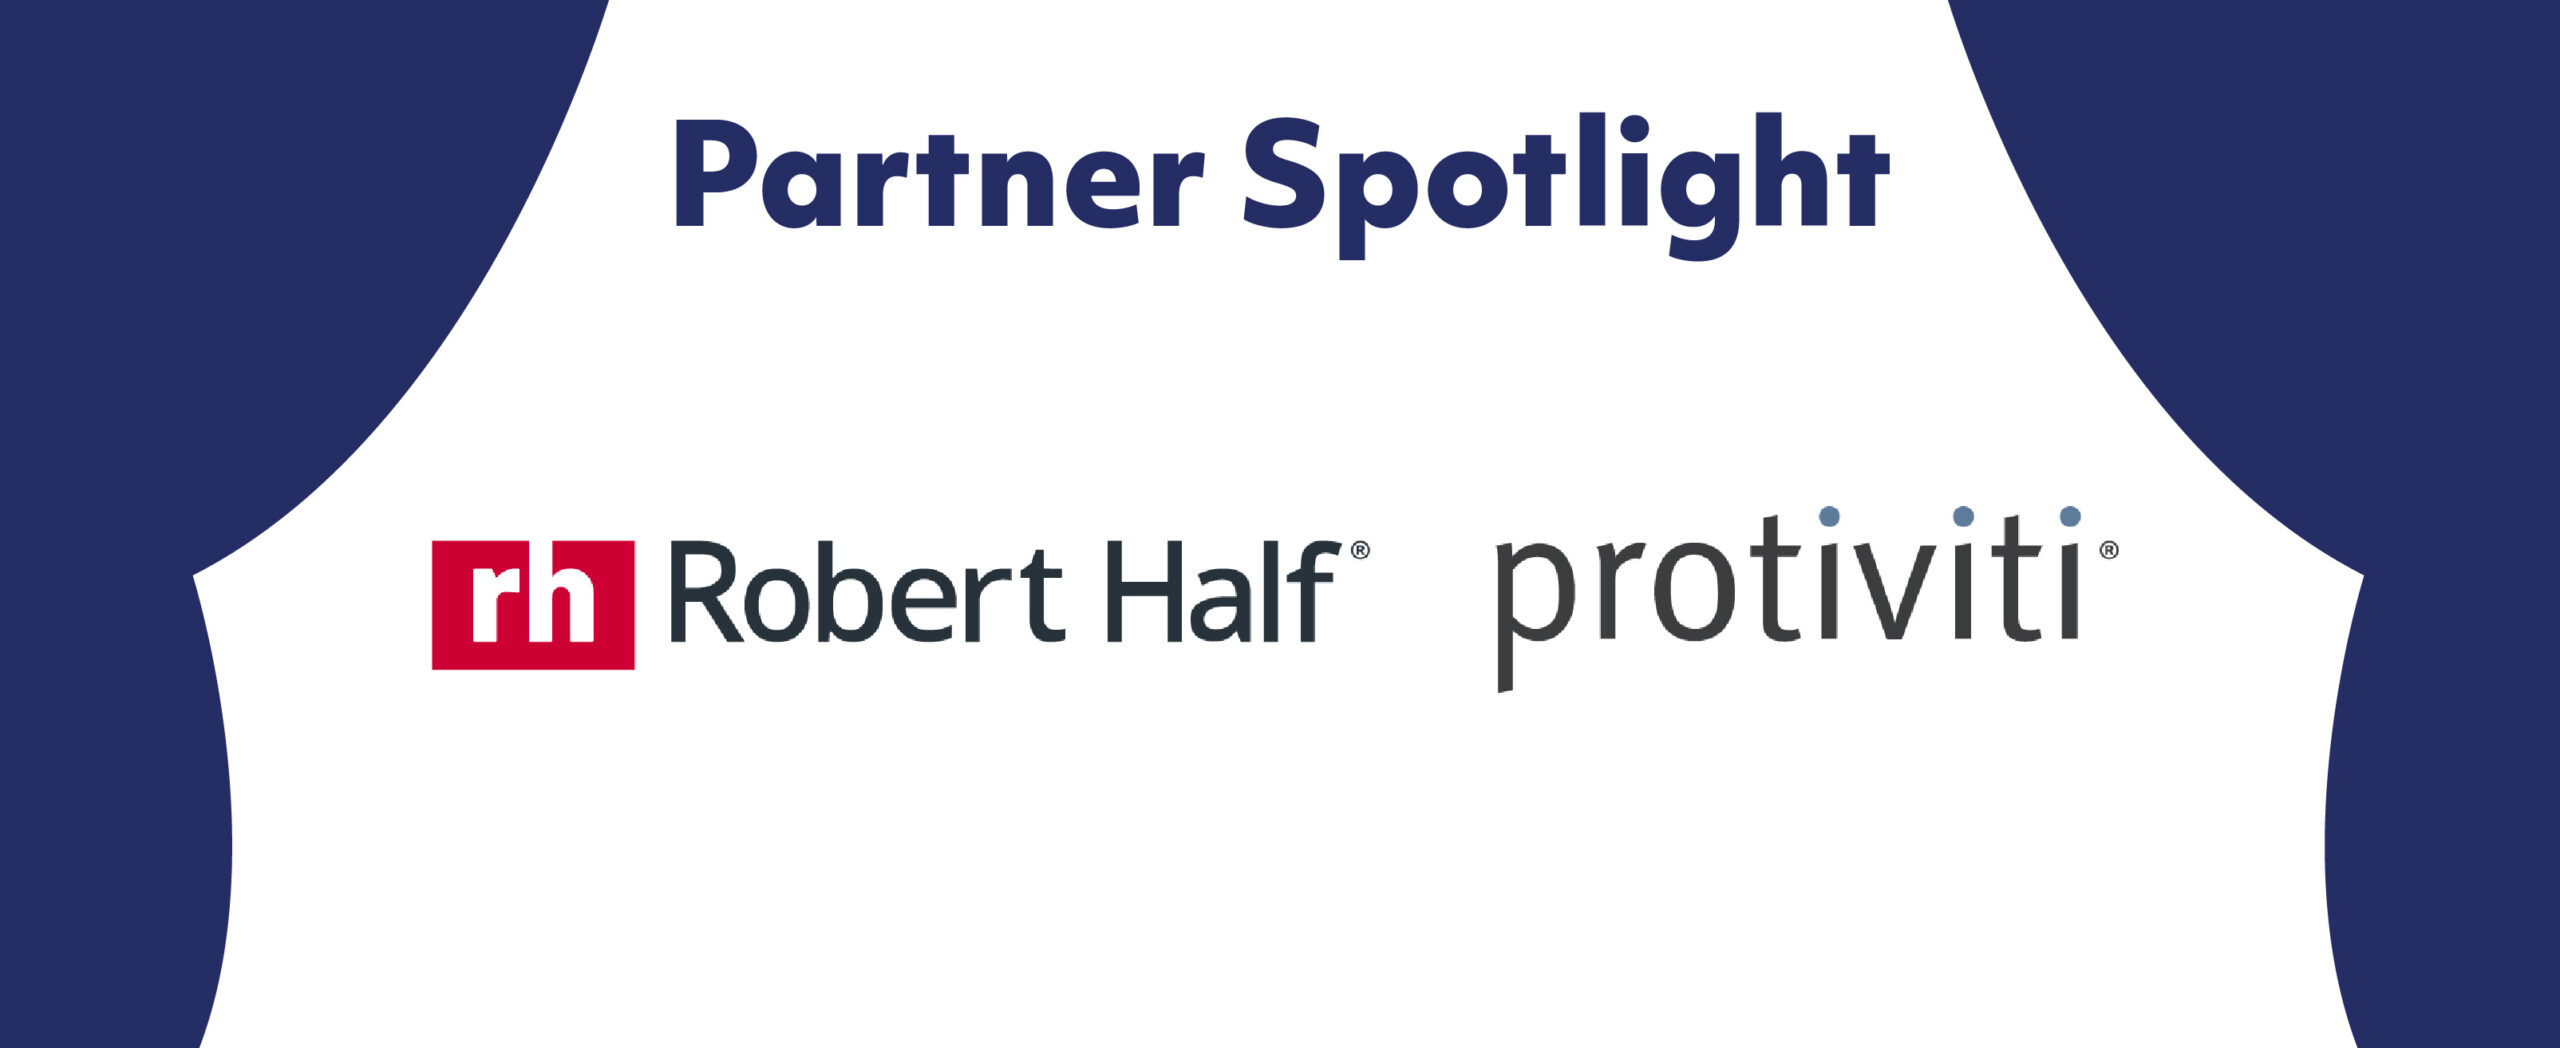 Partner Spotlight on Robert Half and Protiviti. Navy blue curtain design.